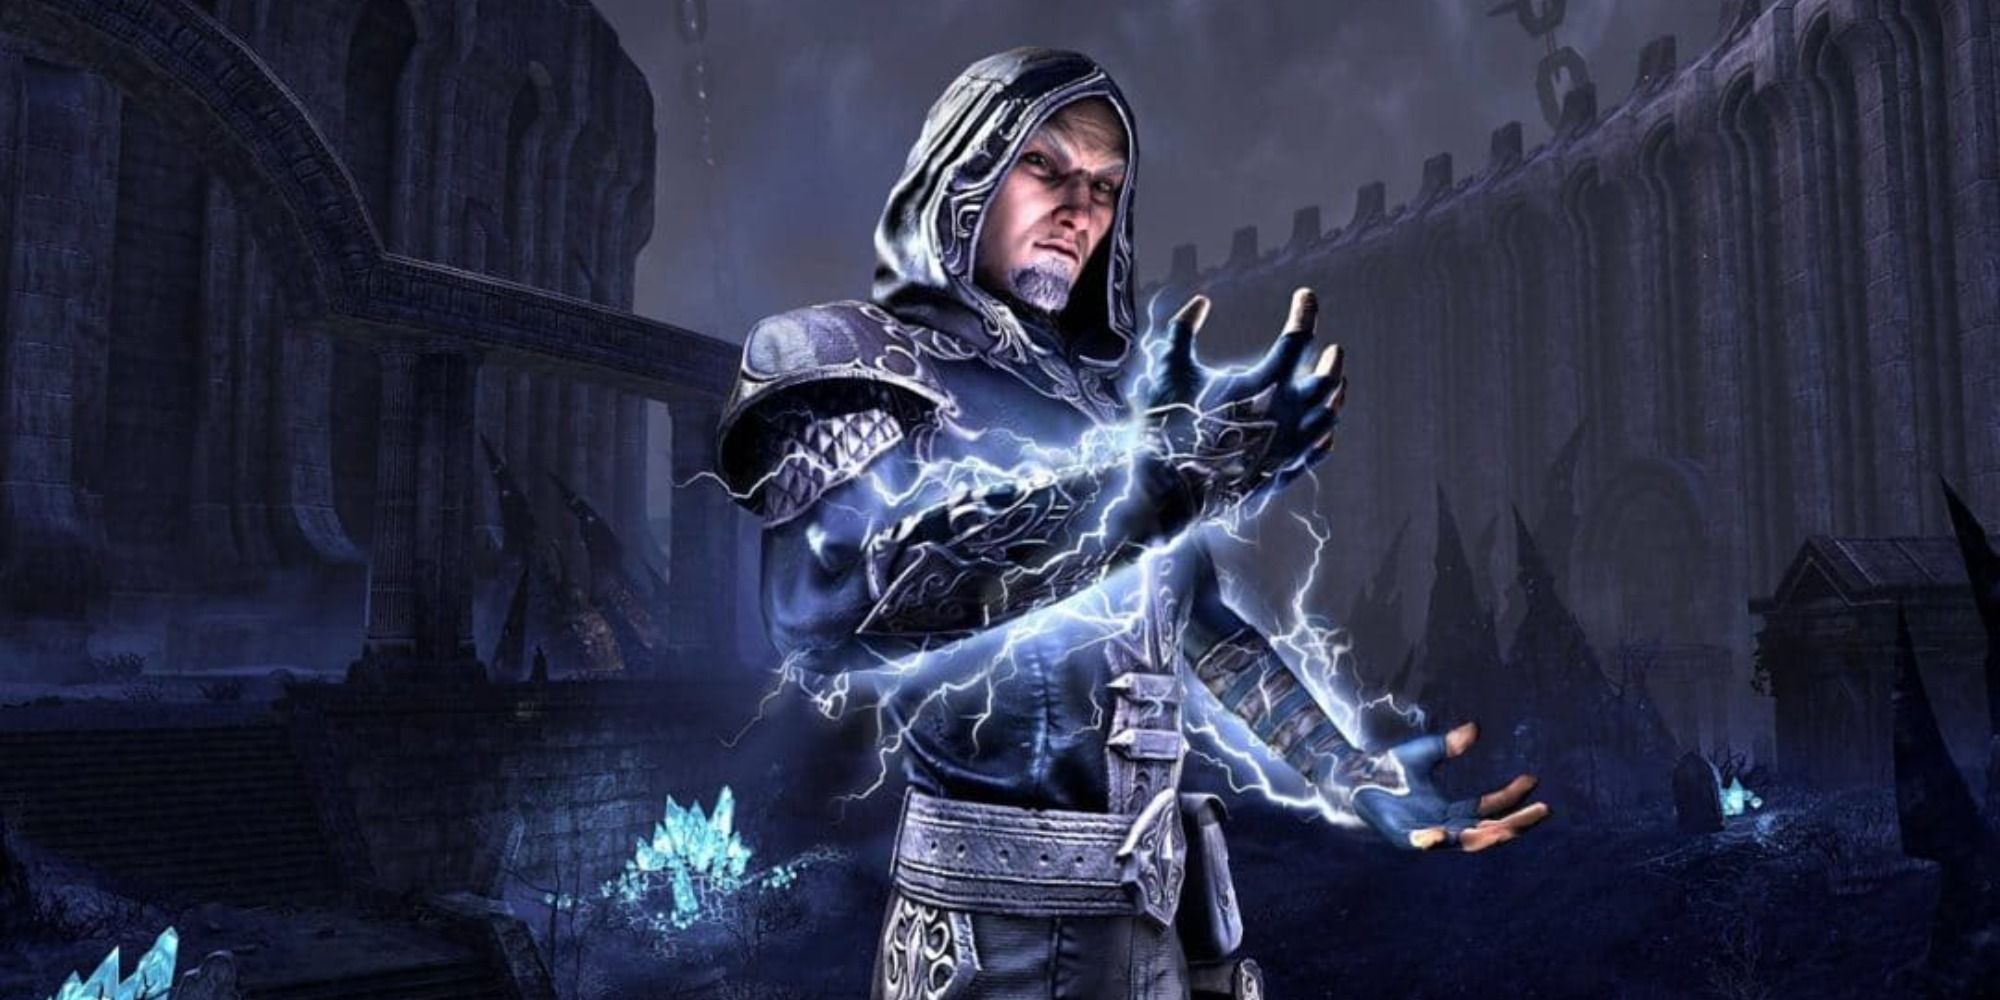 Sorcerer casting lightning